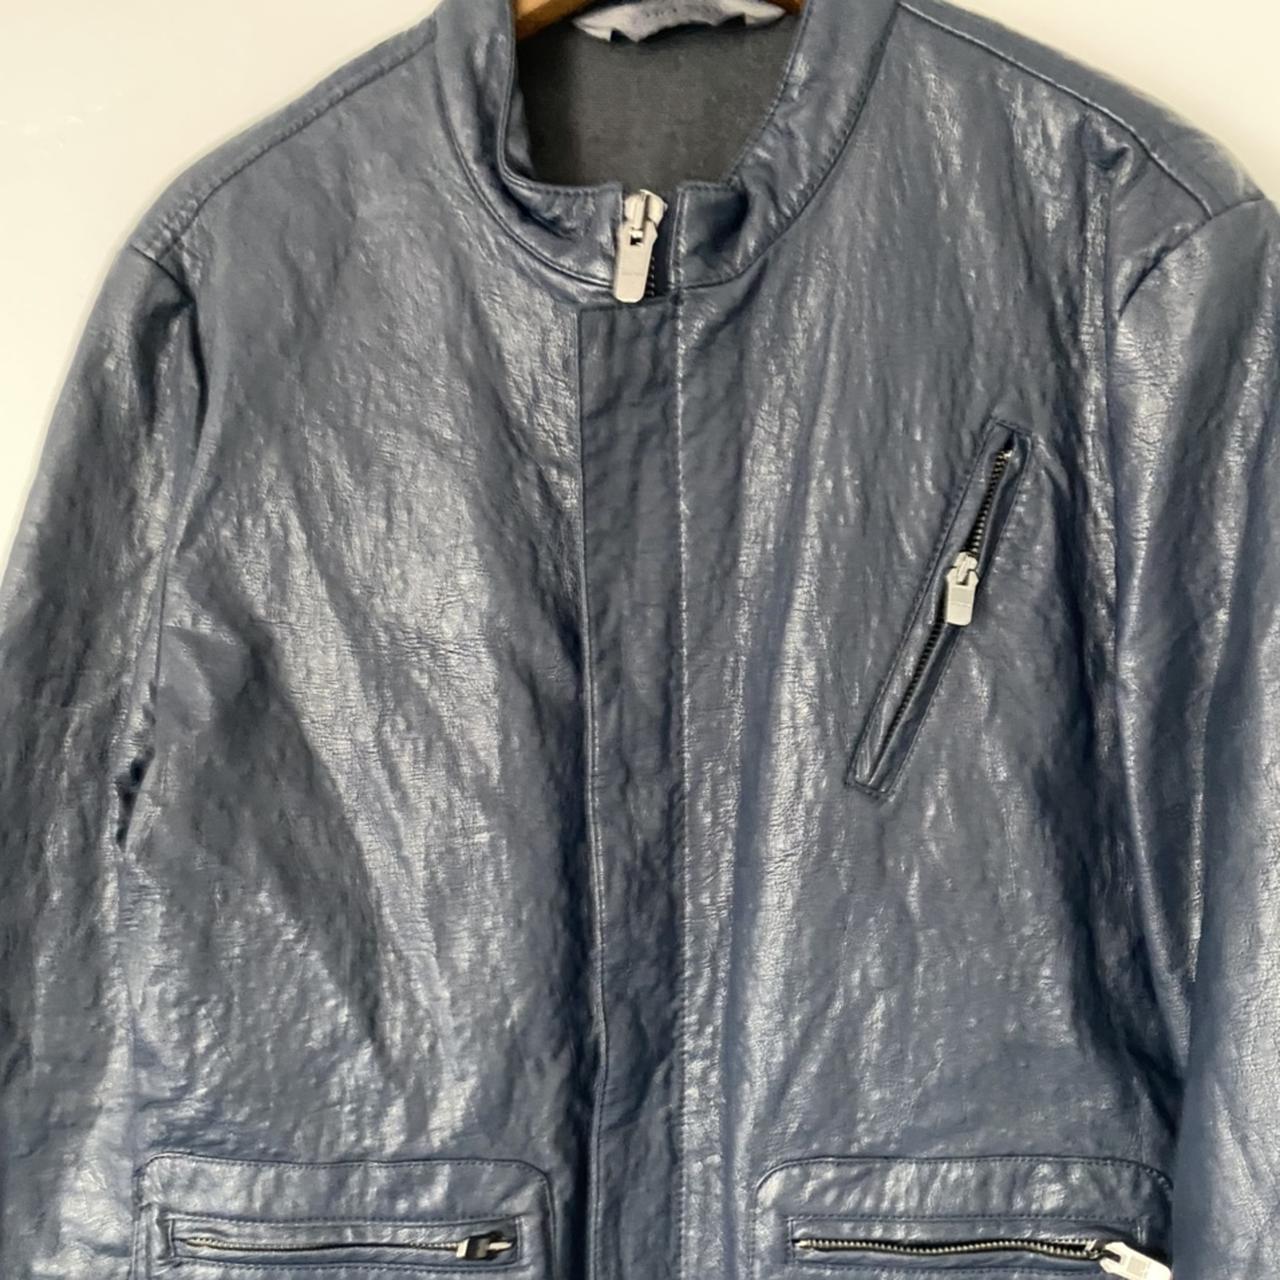 Zara Men's Jacket | Depop